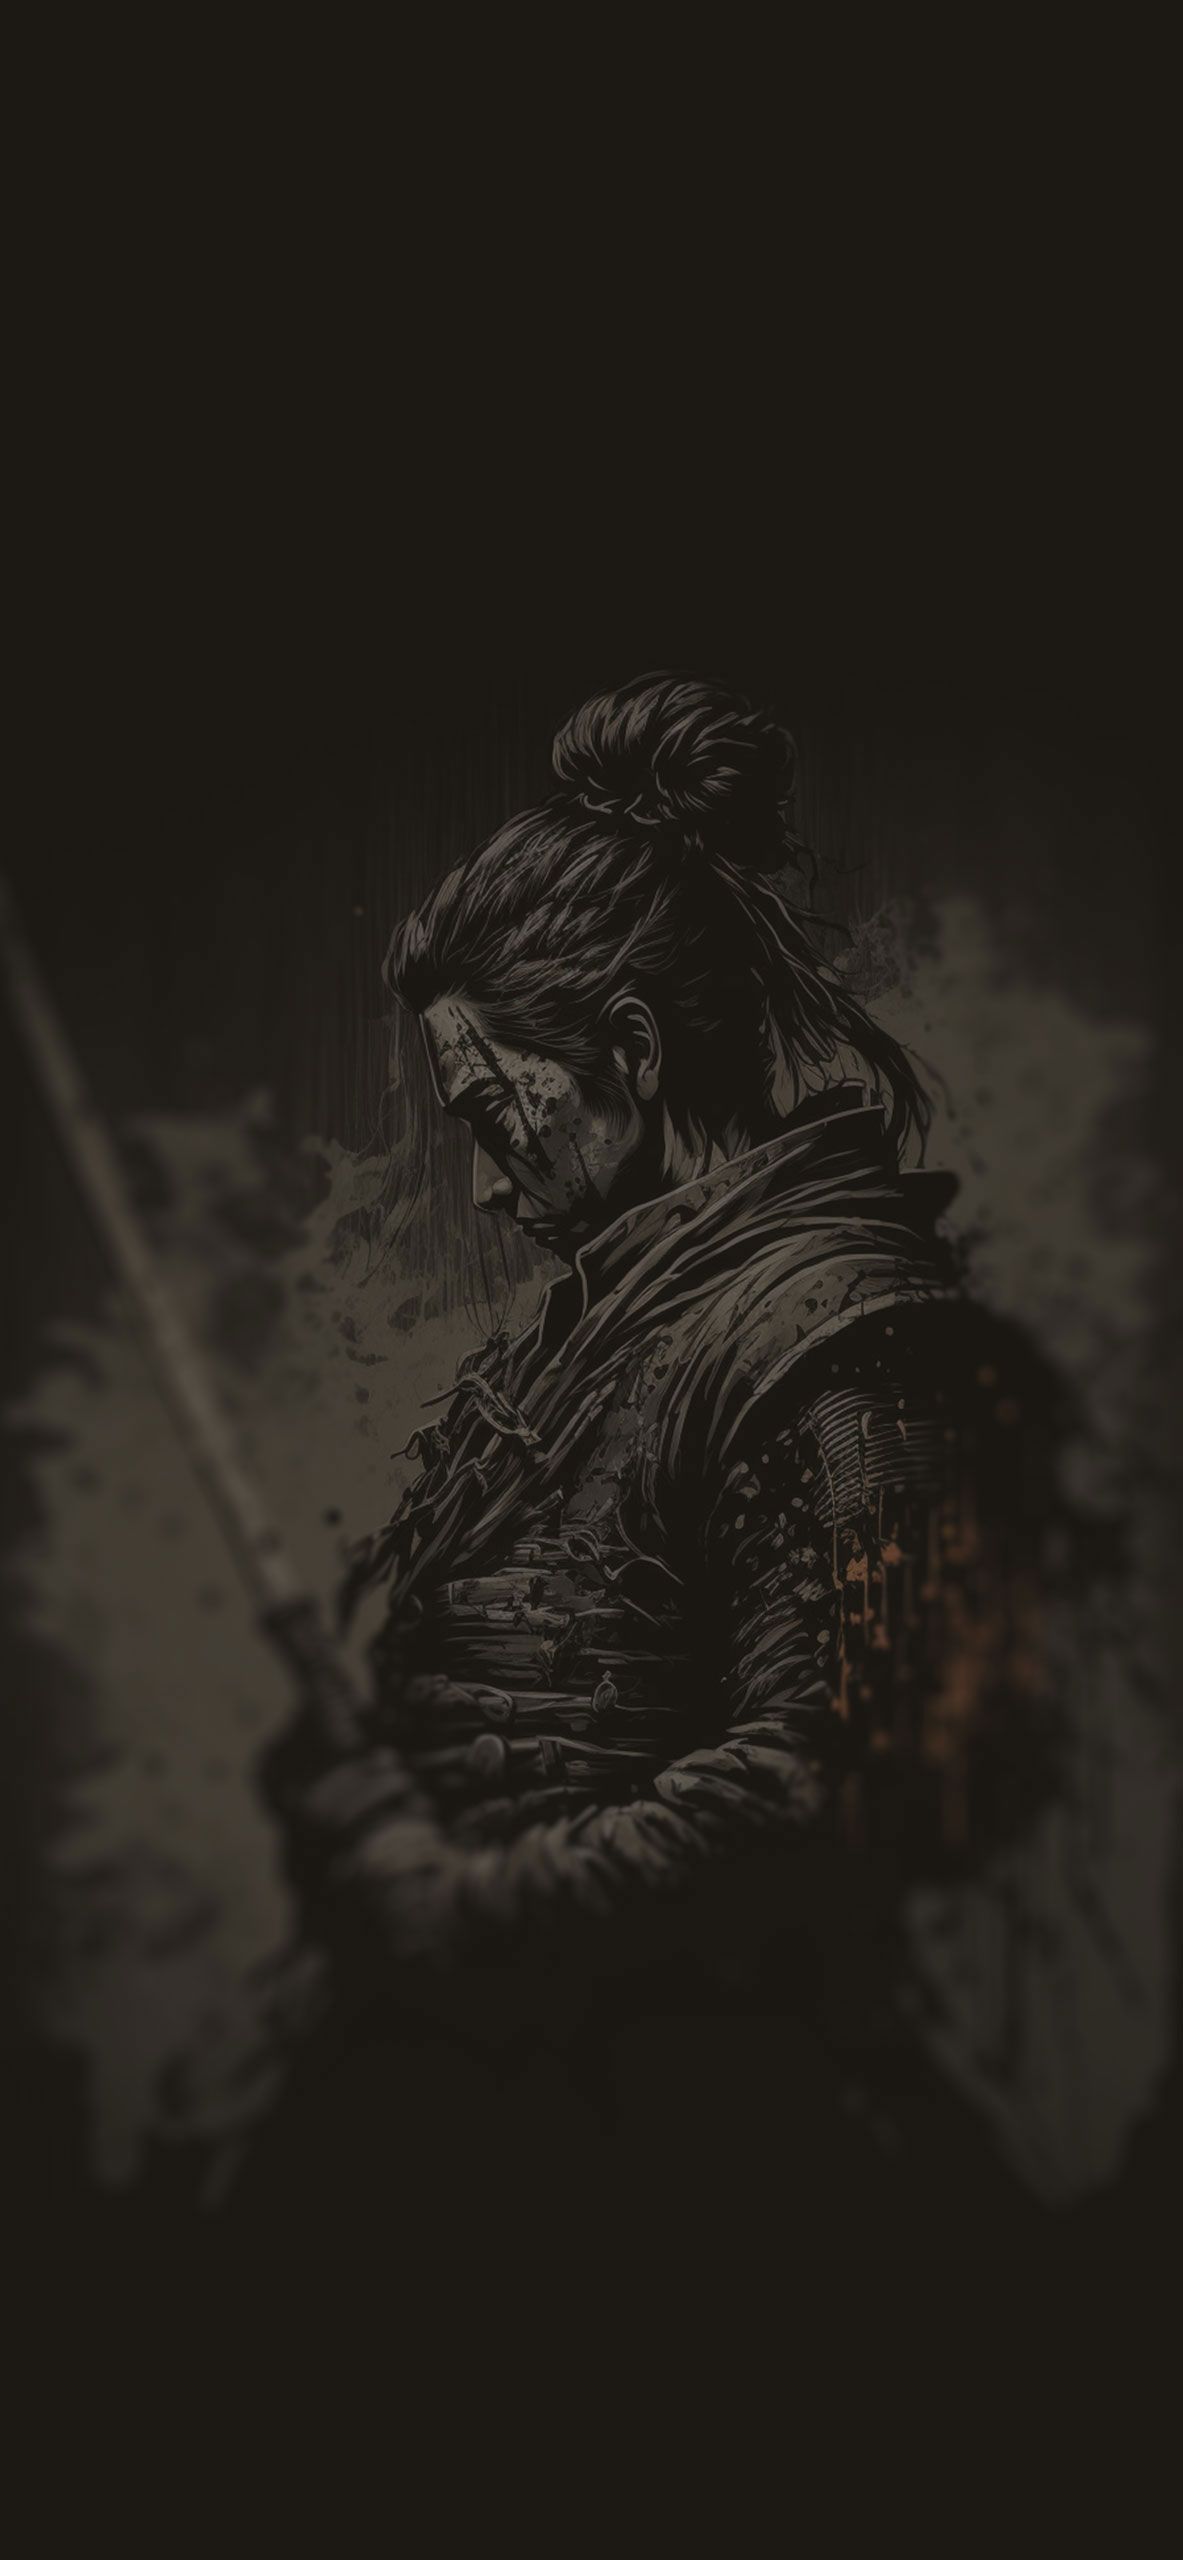 A black and white image of the samurai - Samurai